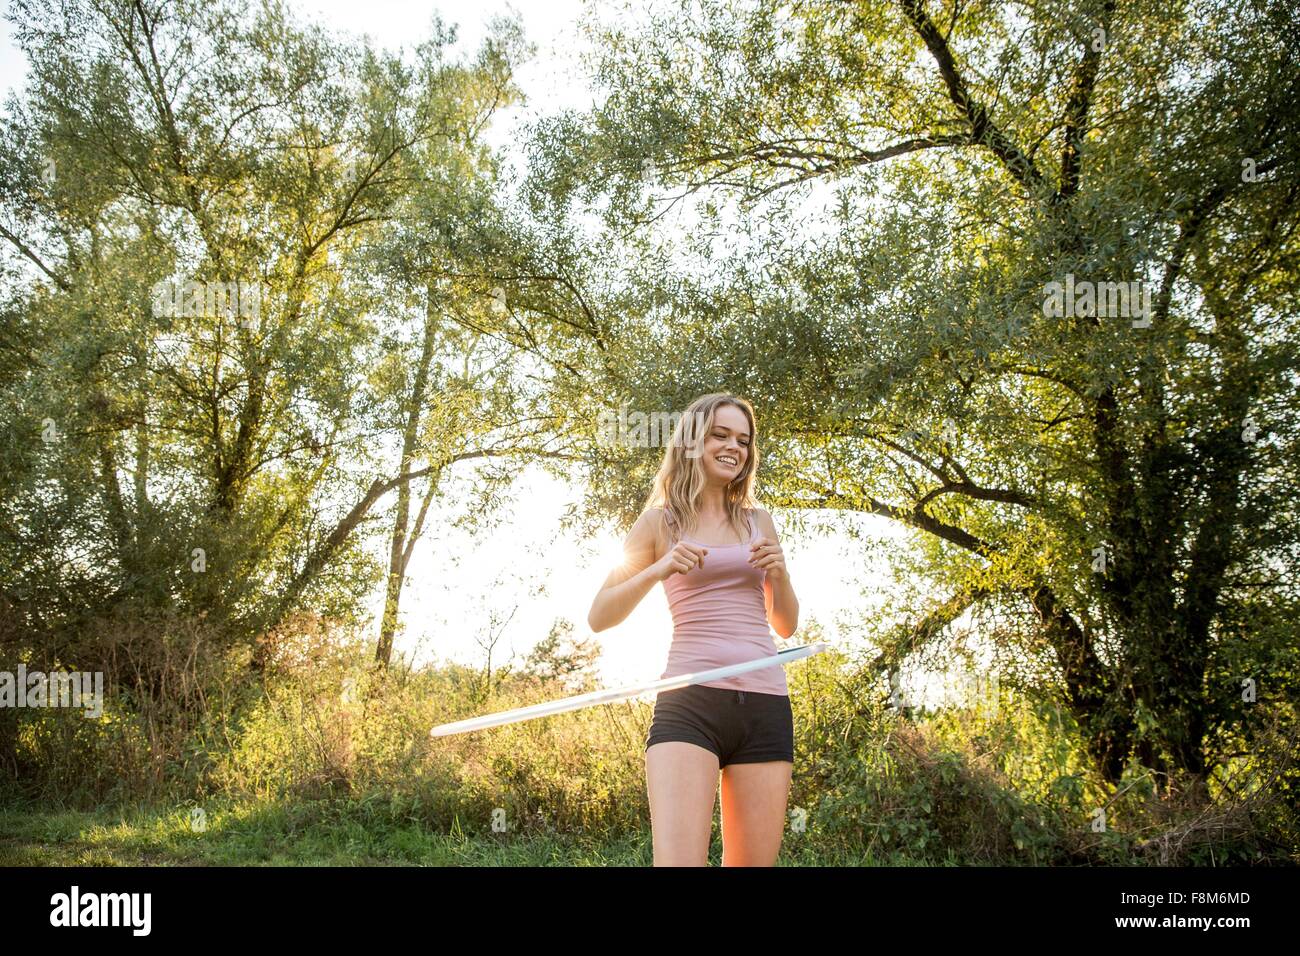 Joven en el medio rural, utilizando hula hoop, sonriendo Foto de stock